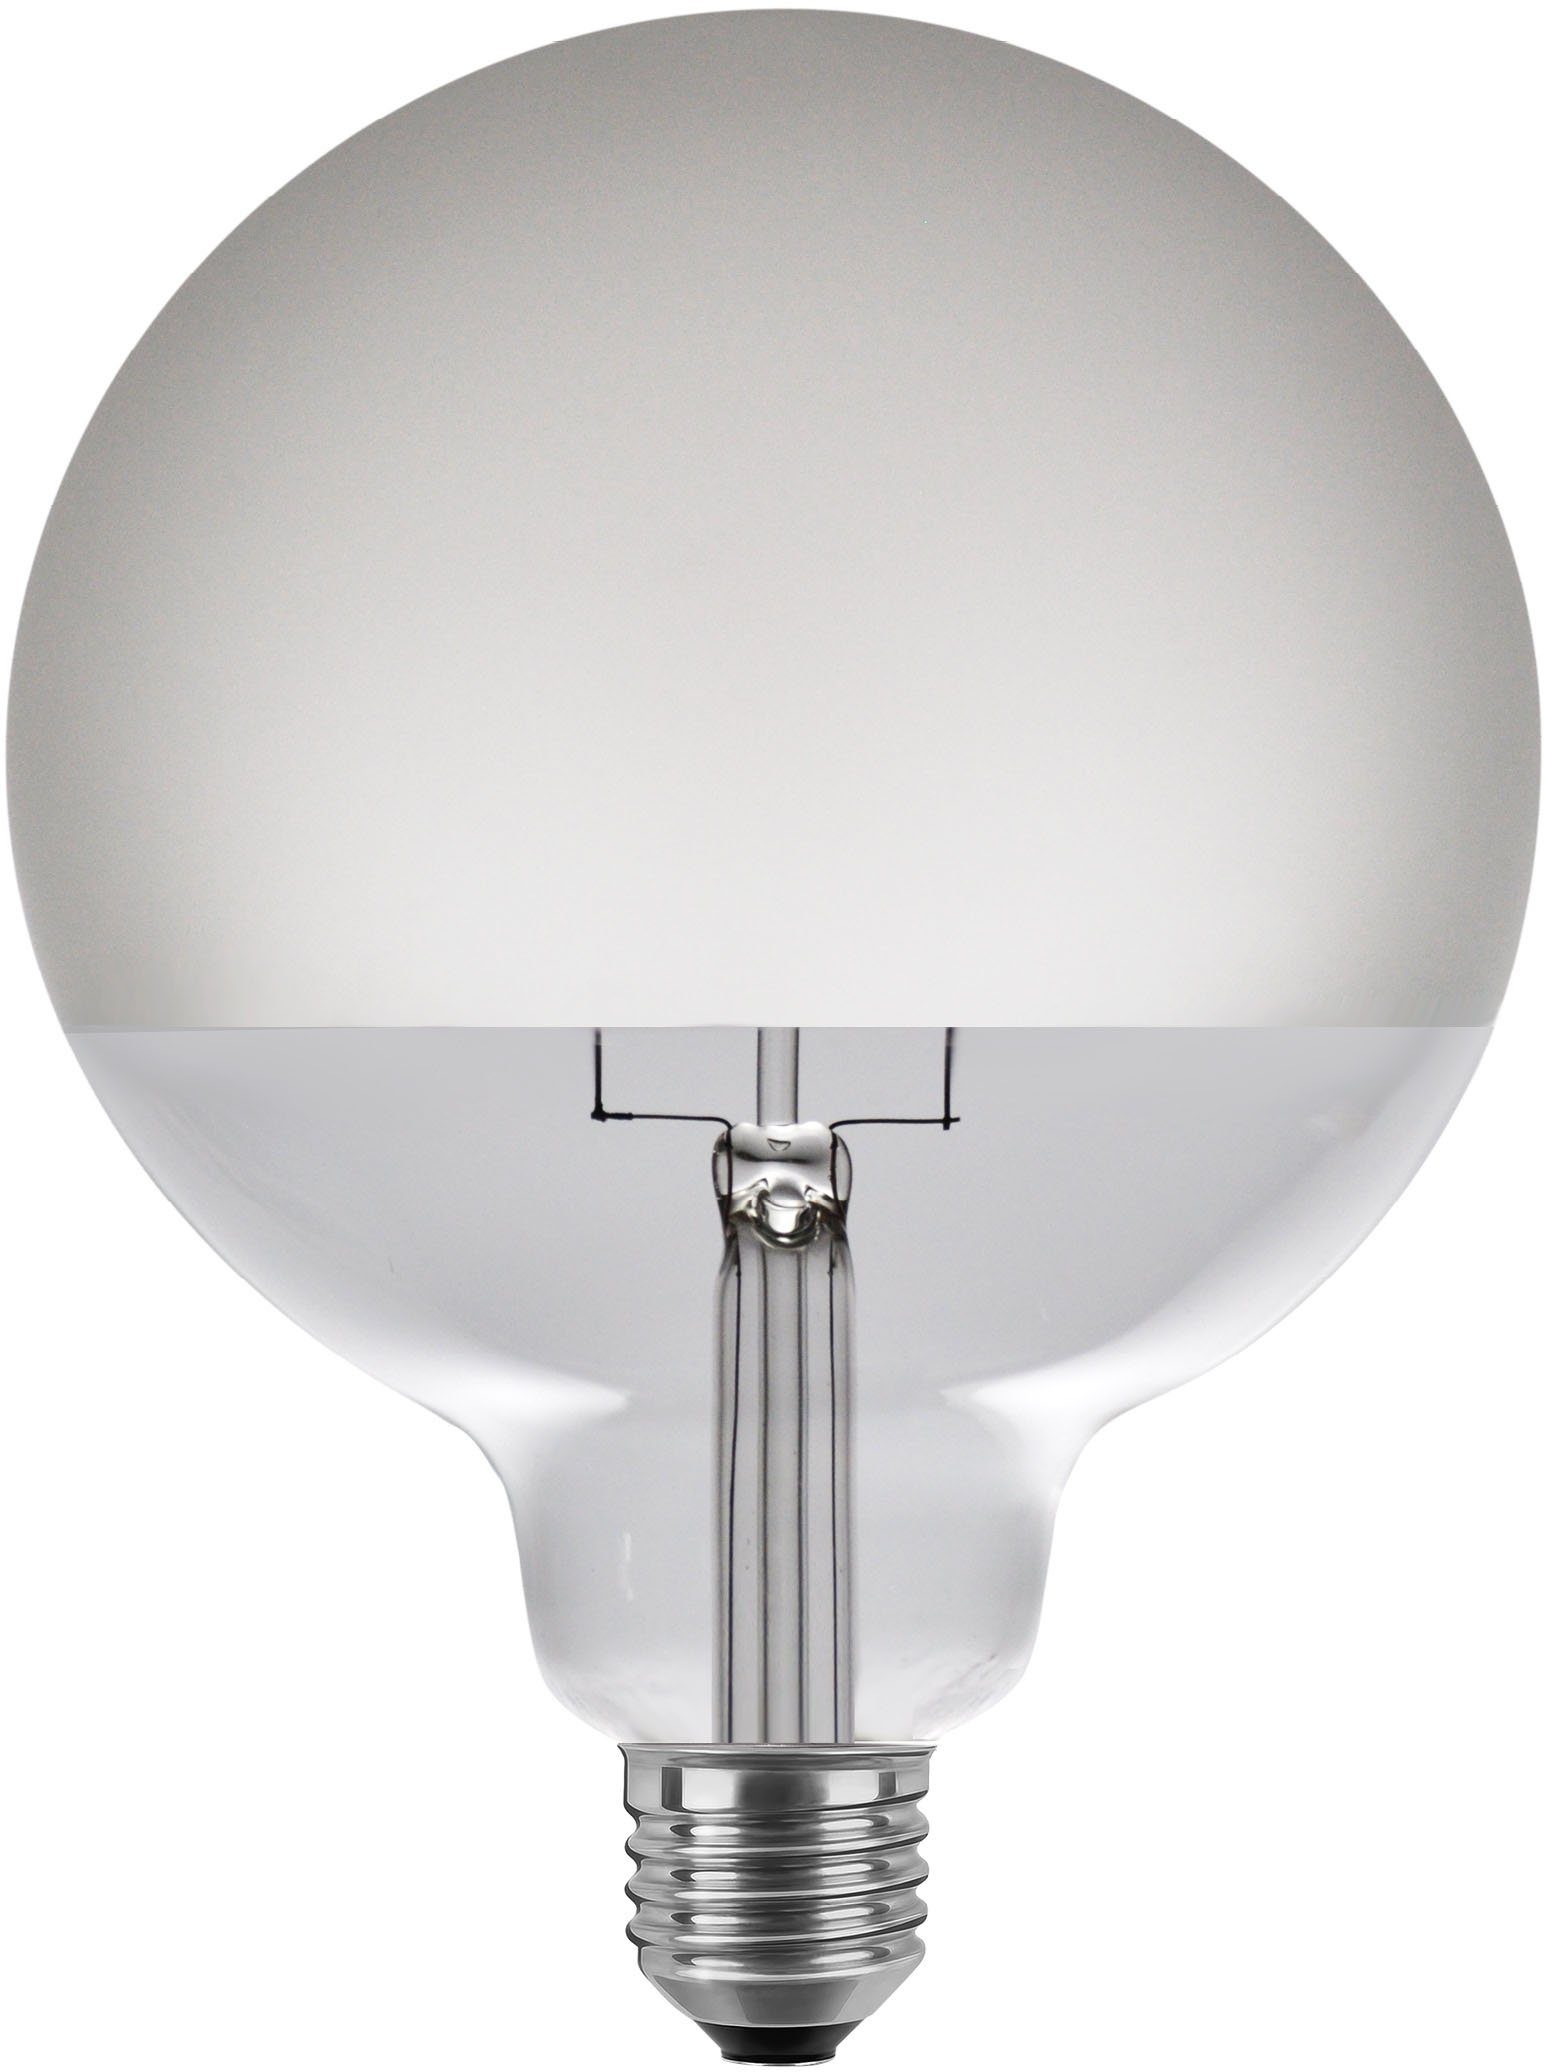 SEGULA LED-Leuchtmittel LED Globe 125 Half Moon matt, E27, Warmweiß, dimmbar, E27, Globe 125 Half Moon, matt, 2700K